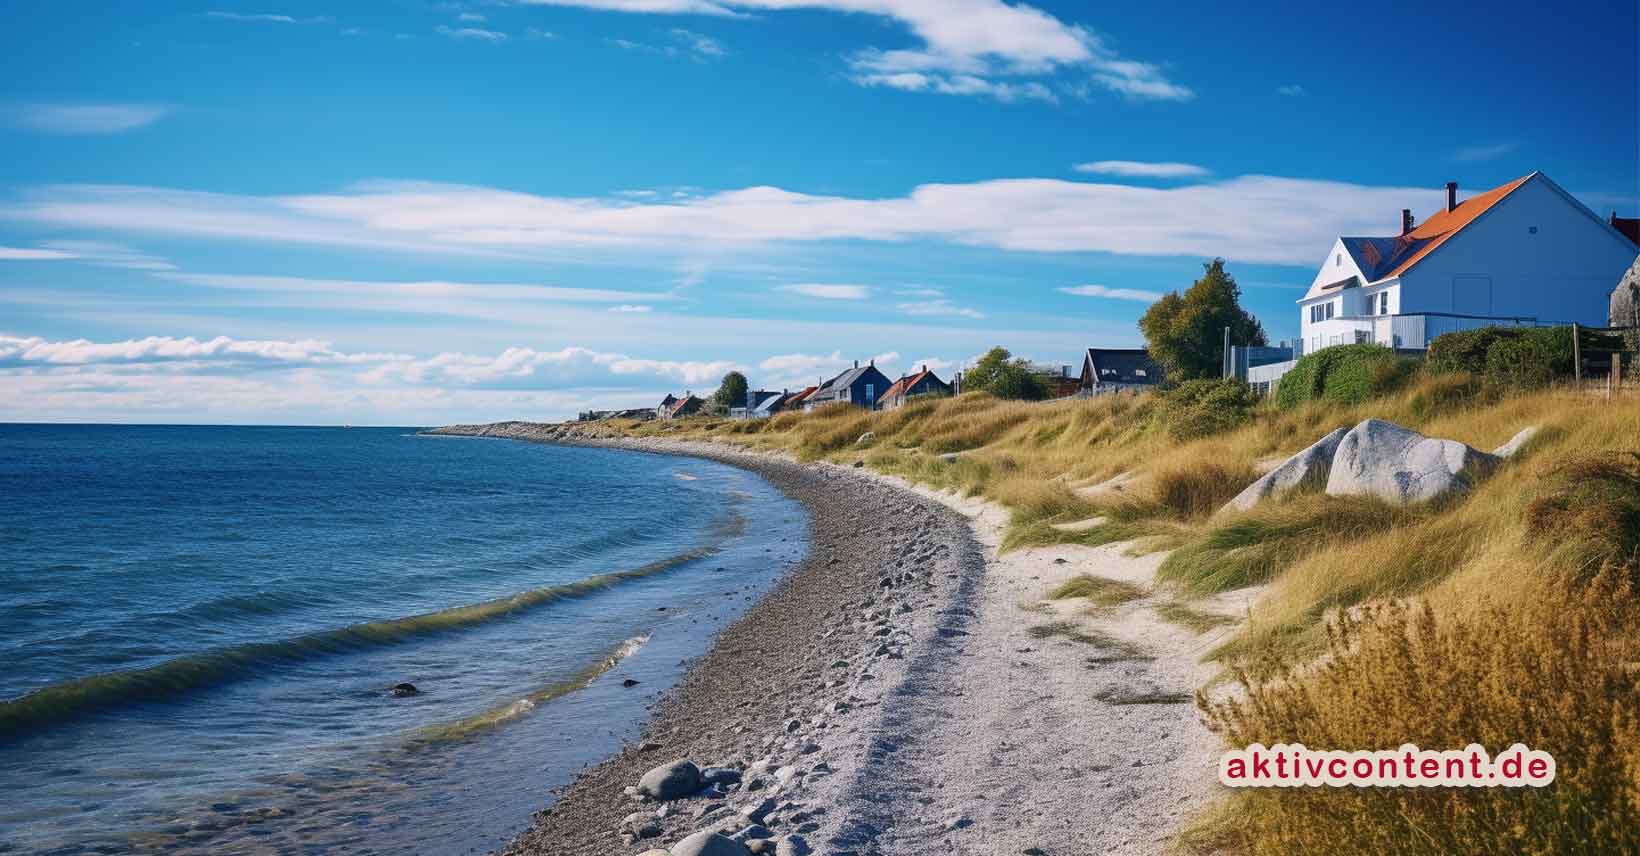 Ferienhaus in Dänemark jetzt online finden und reservieren